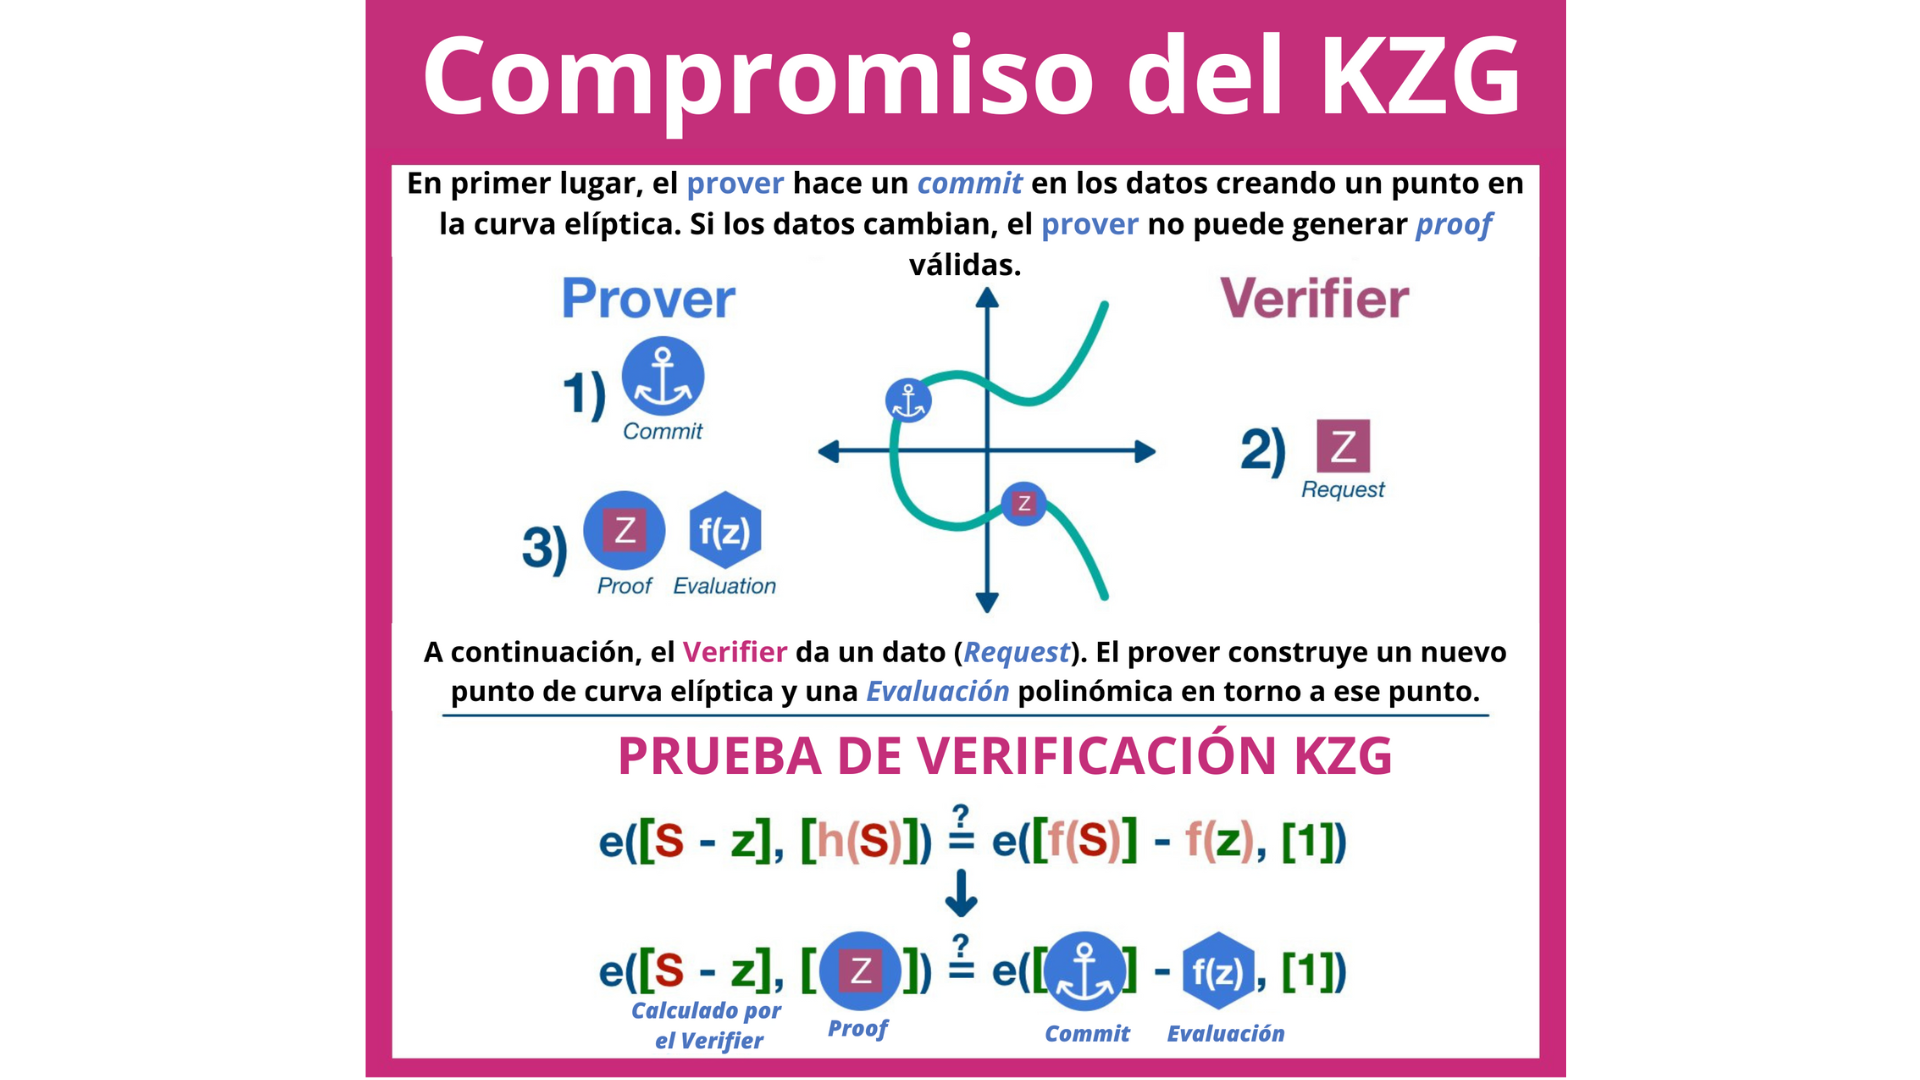 Funcionamiento del compromiso KZG